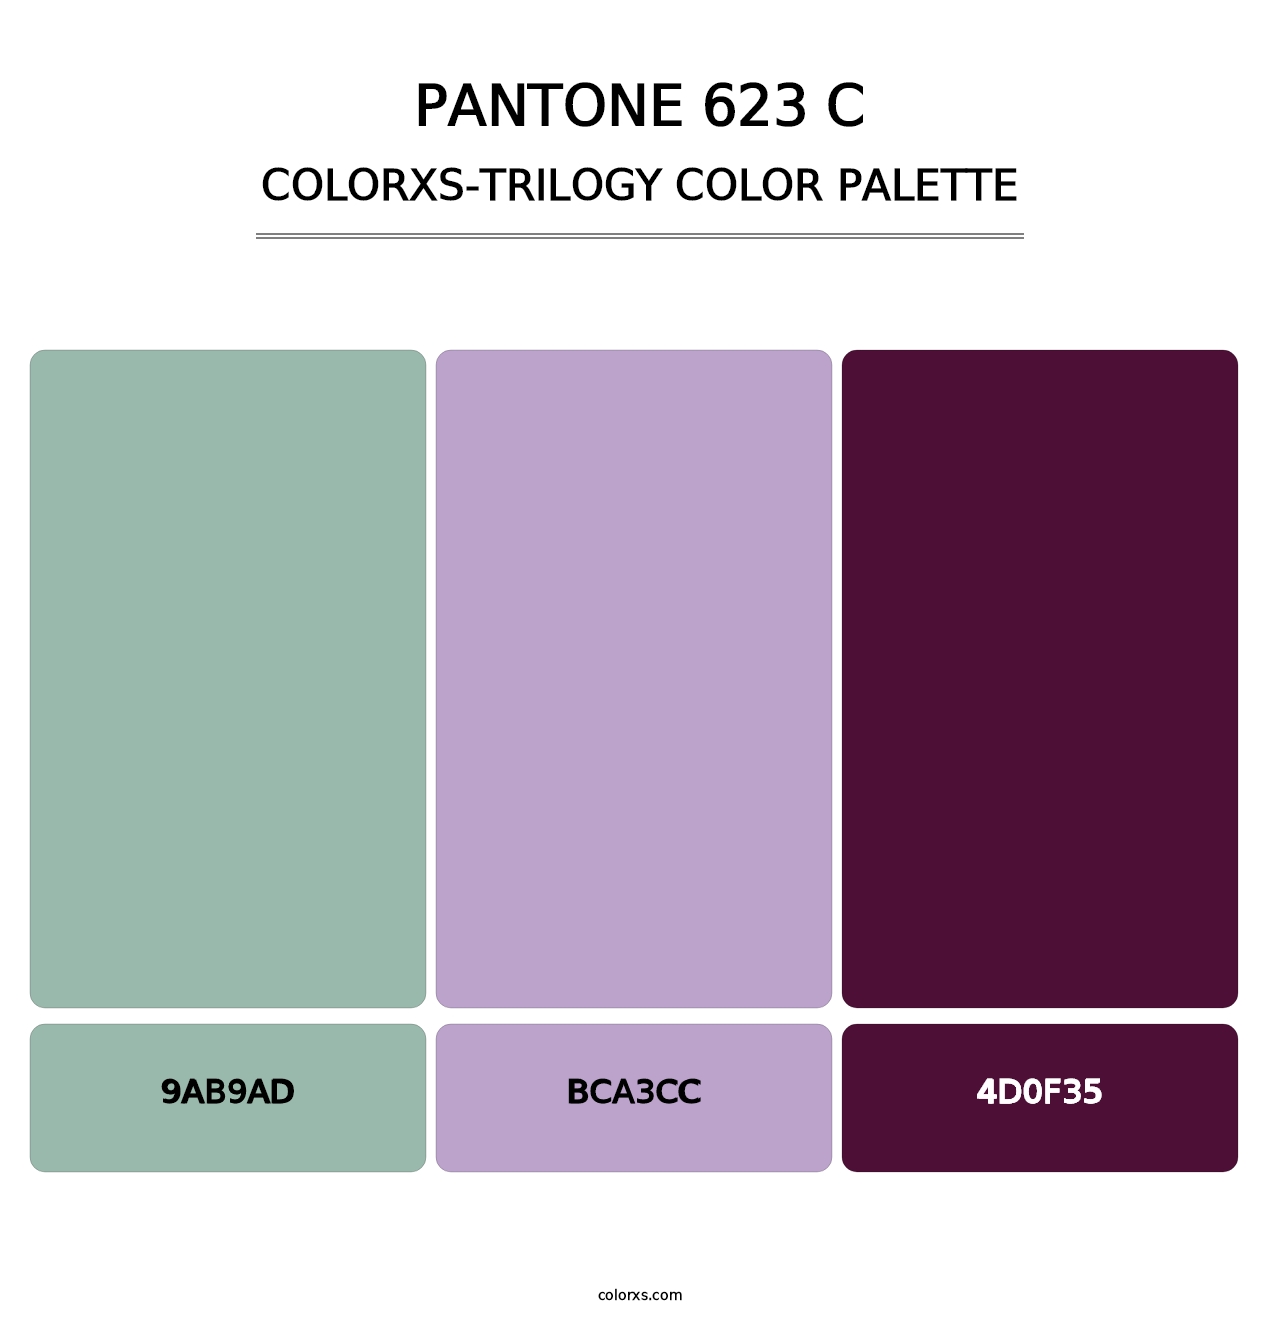 PANTONE 623 C - Colorxs Trilogy Palette